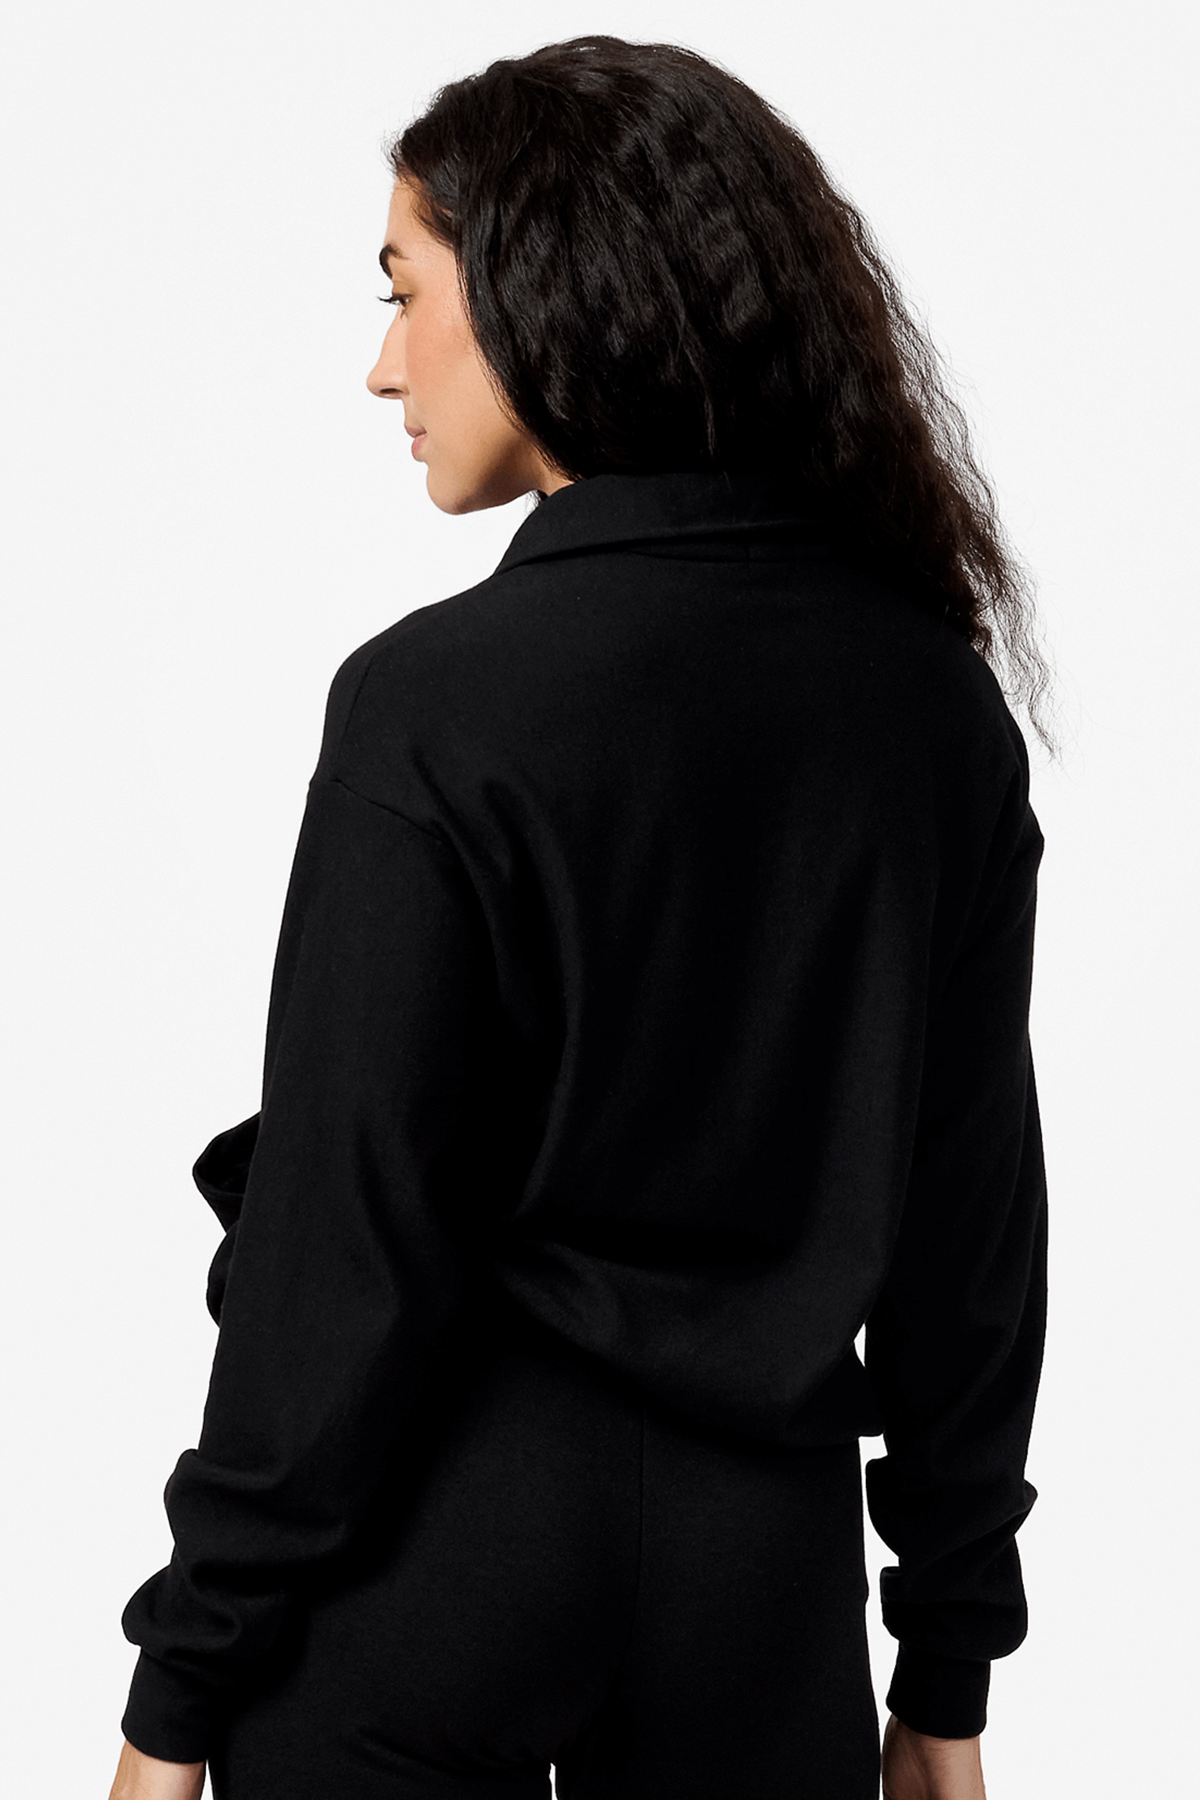 Back of a woman wearing a black half zip sweatshirt